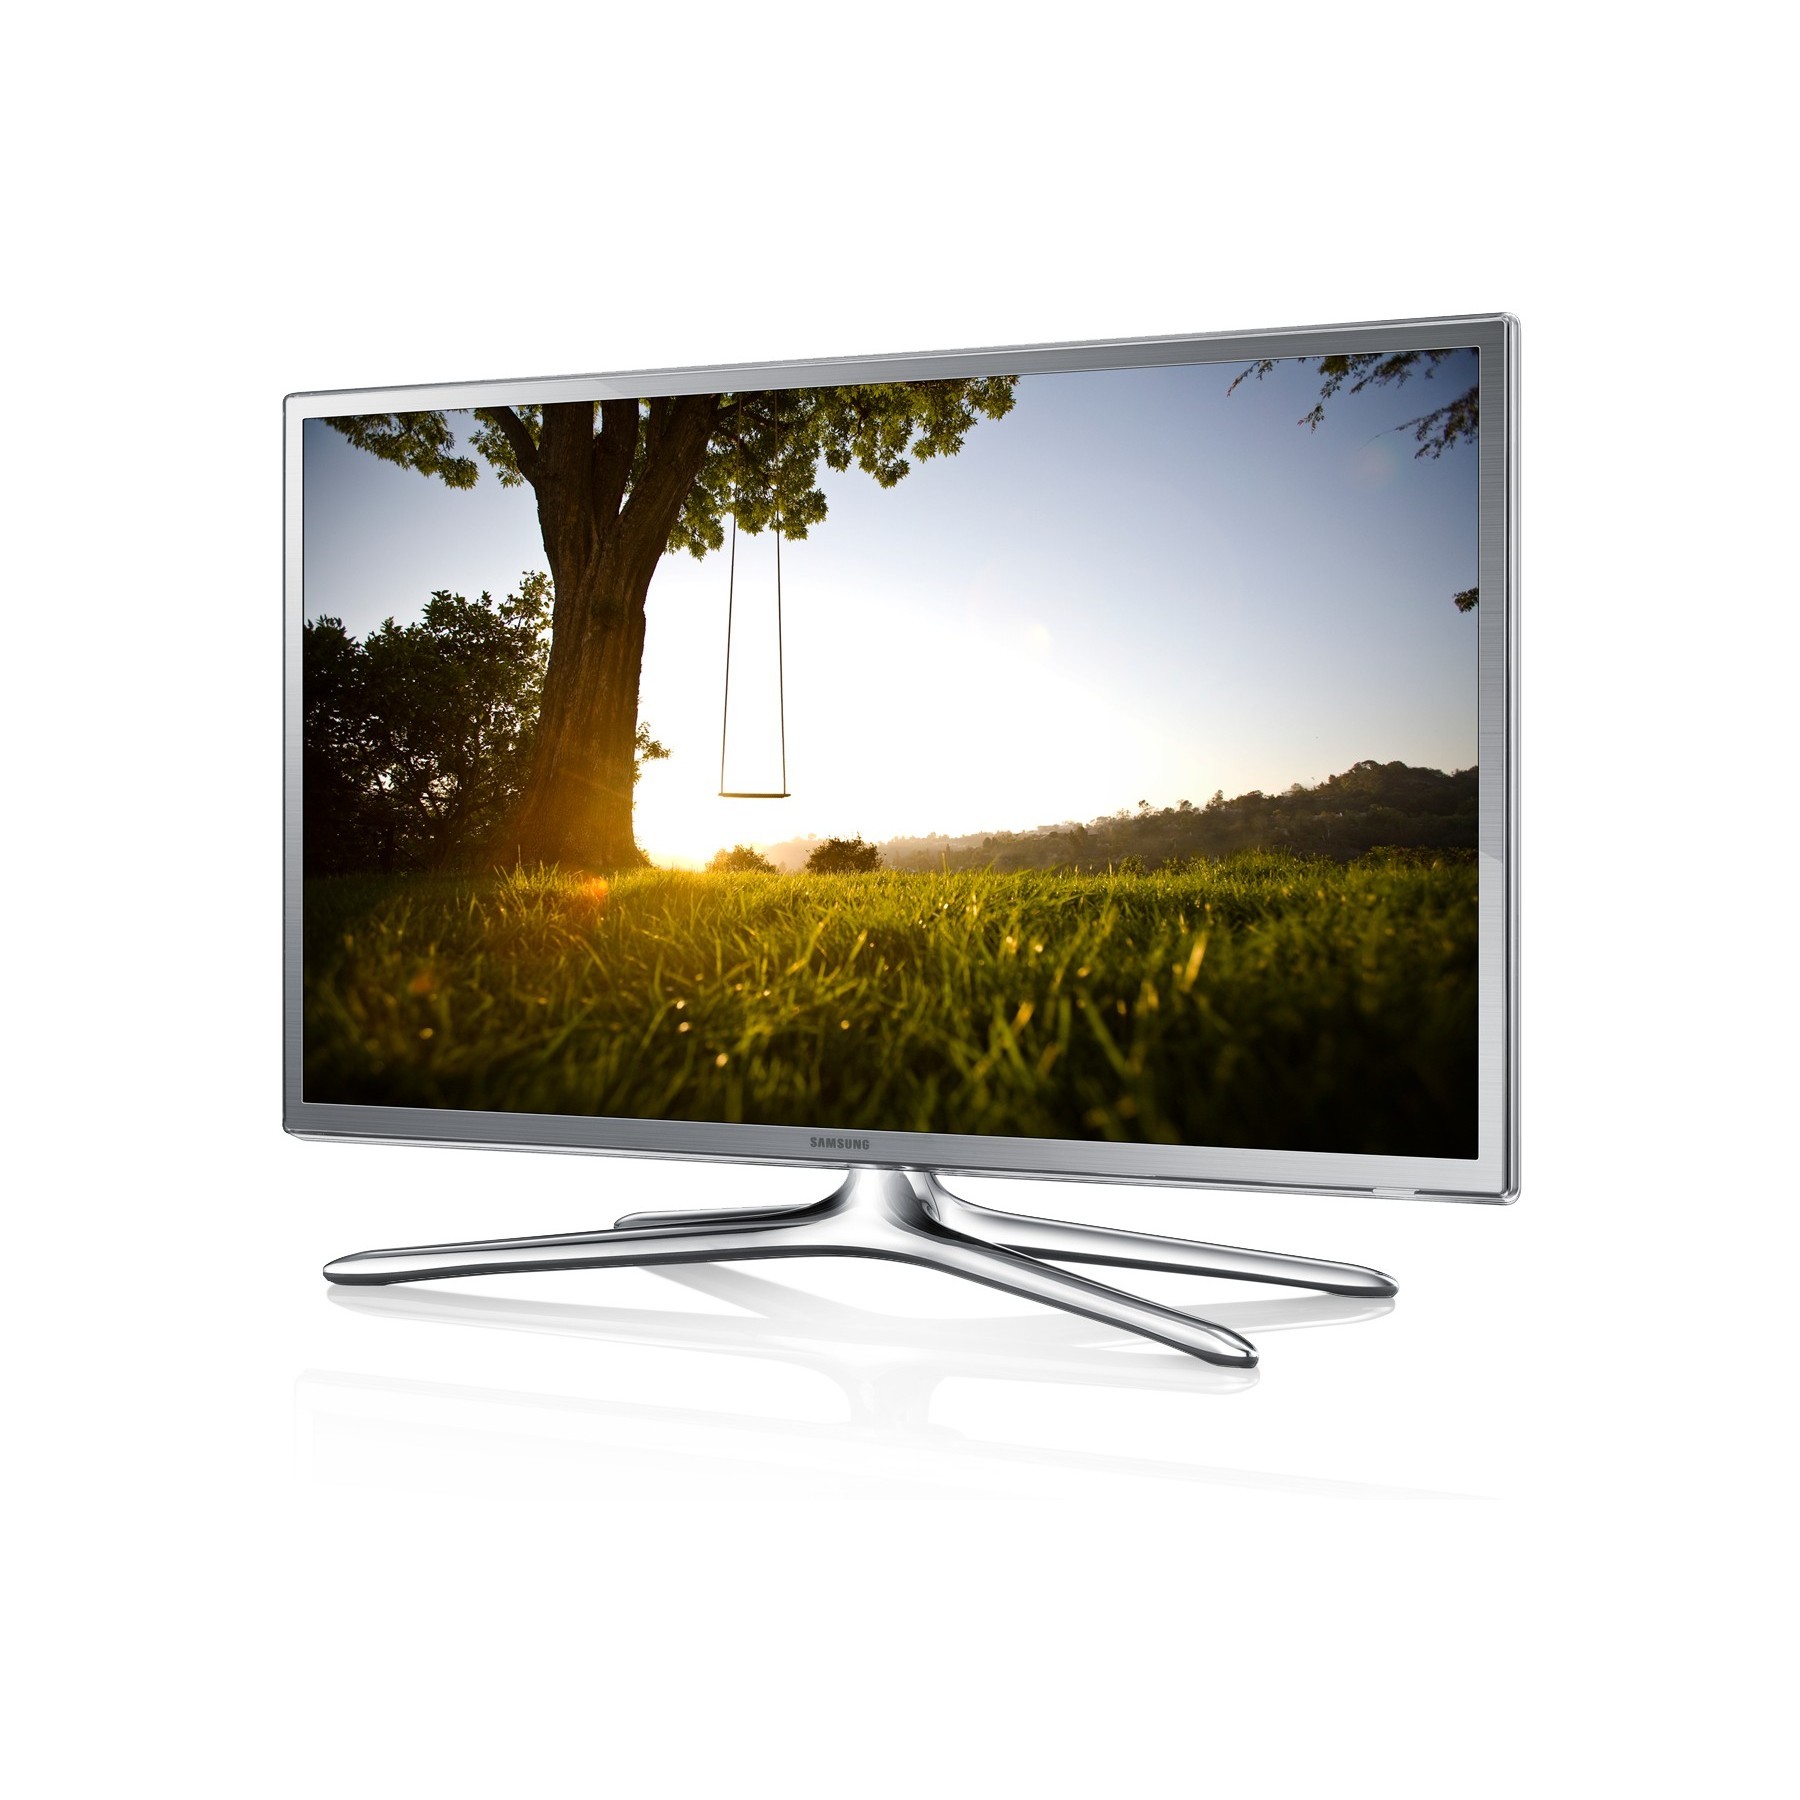 Белые телевизоры 32 дюйма смарт. Samsung ue32f6400 led. Телевизор Samsung ue46f6200ak. Samsung 46 f 6510. Samsung ue32f6200 led.